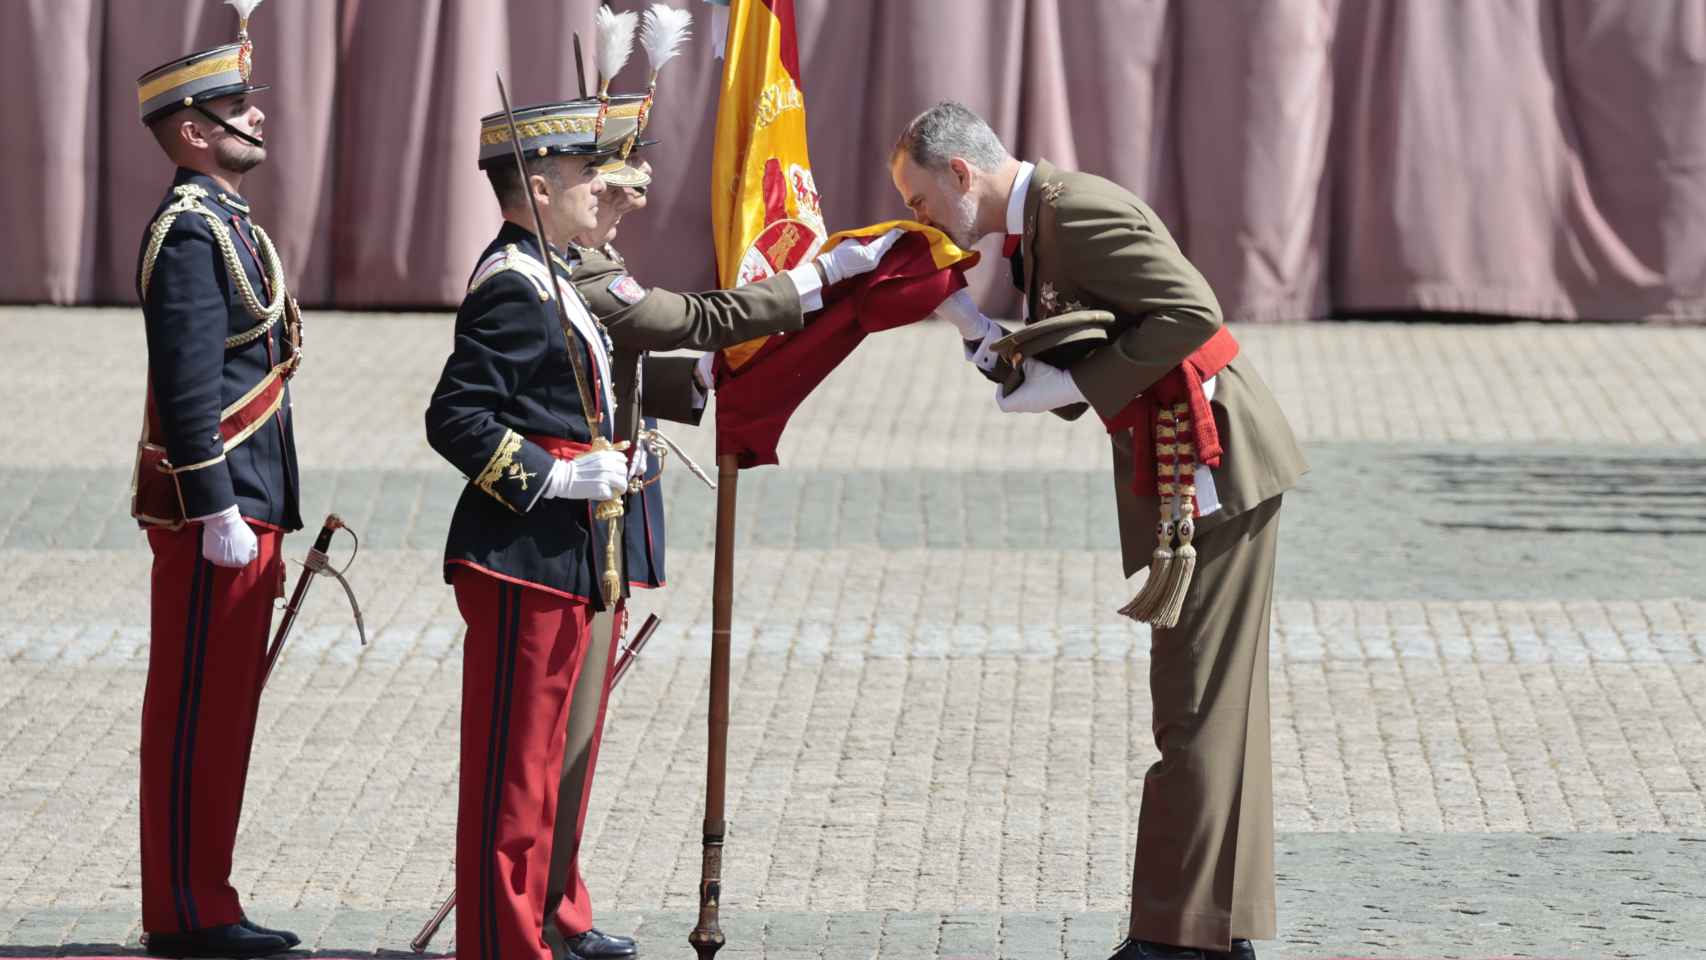 Felipe VI renueva su jura de bandera arropado por Letizia y la princesa Leonor en un histórico acto en Zaragoza